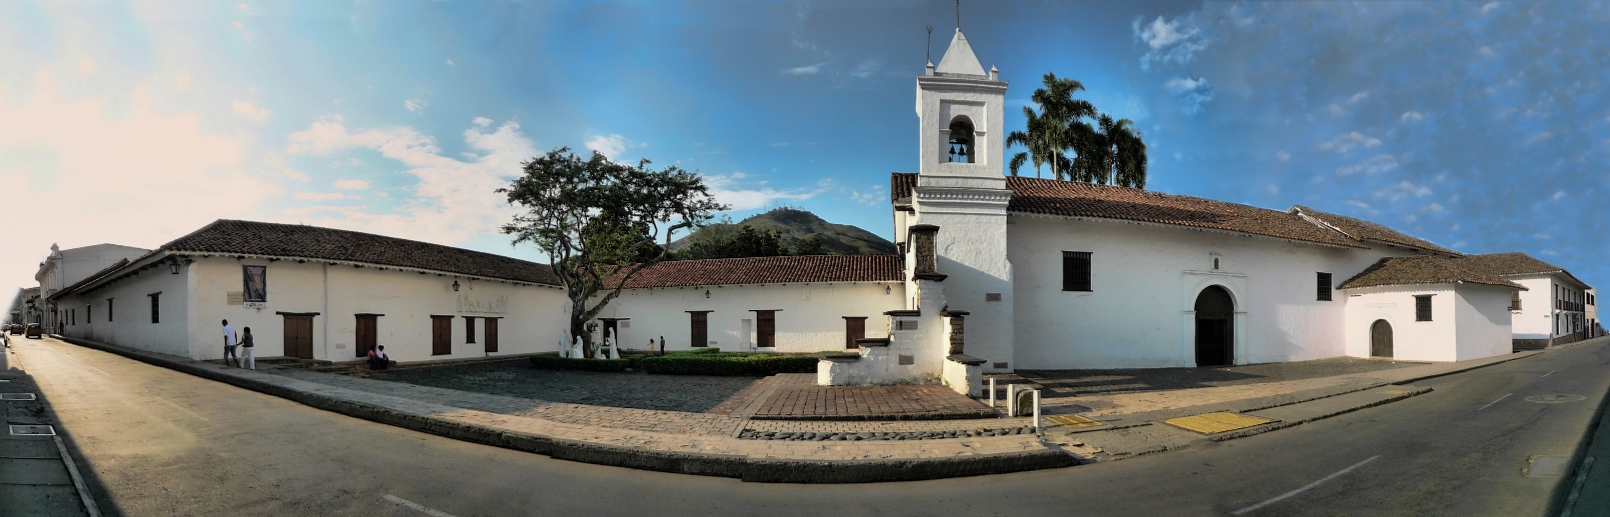 10607-Convento_La_Merced_Valle_del_Cauca_1.JPG